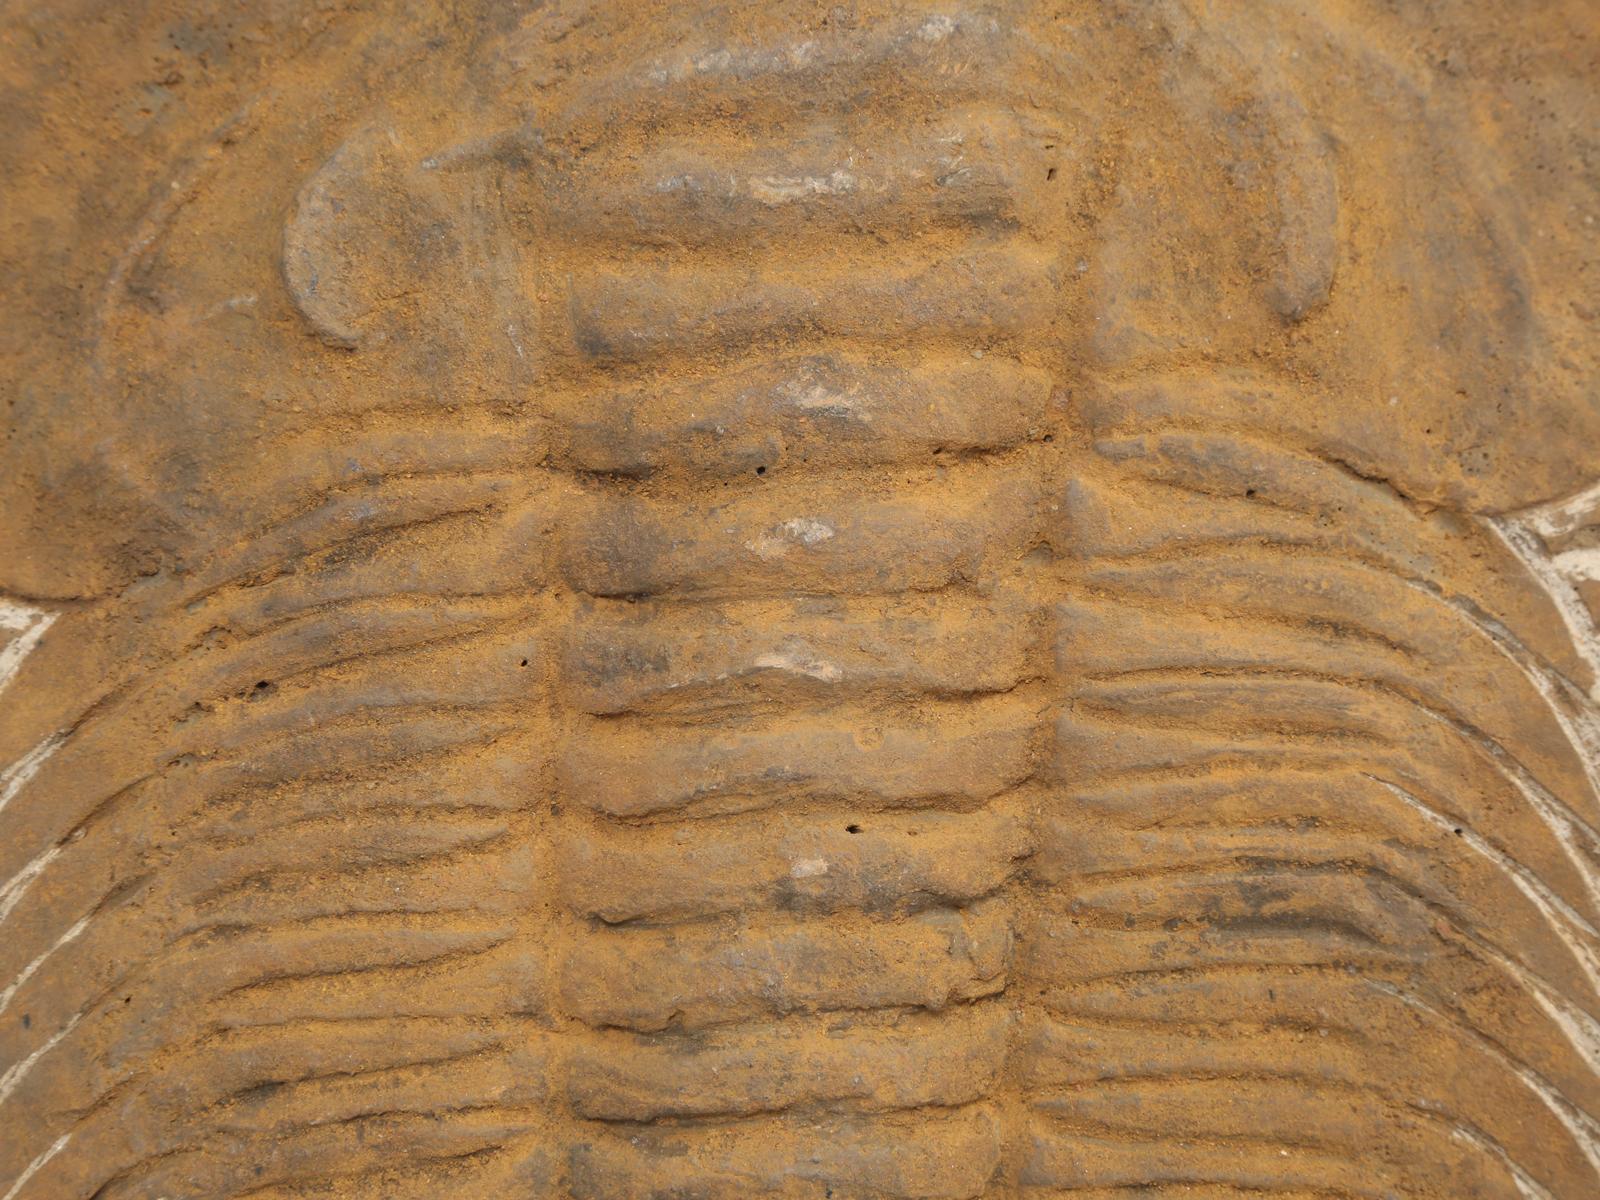 paleozoic era trilobites